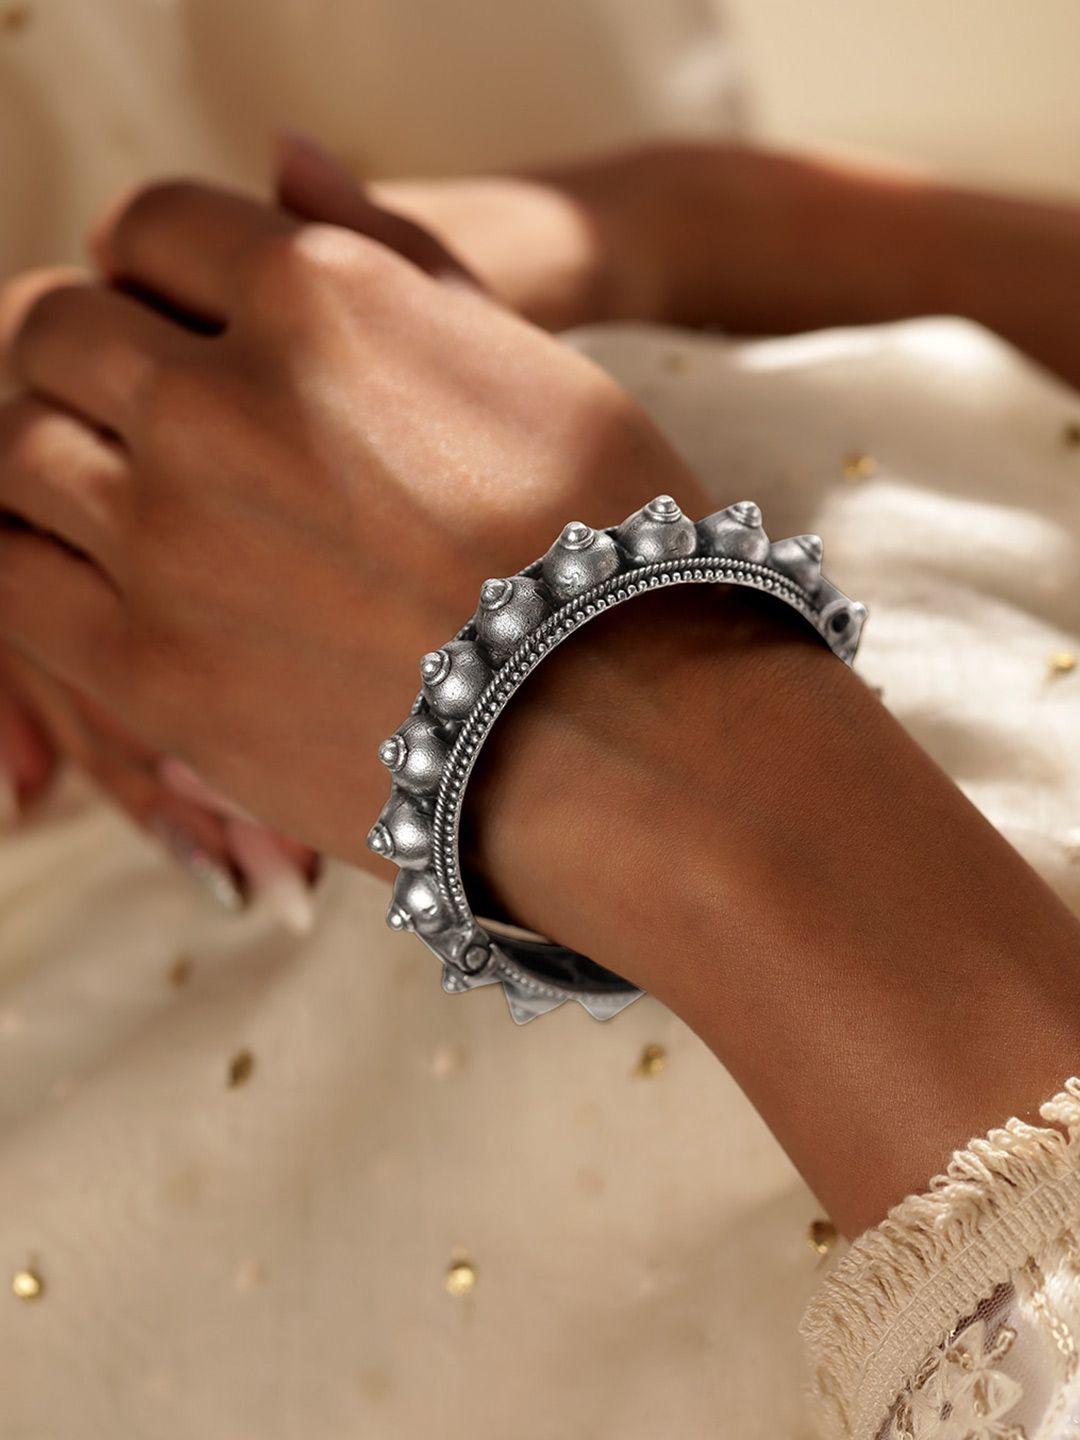 rubans rhodium-plated oxidized bangle-style bracelet